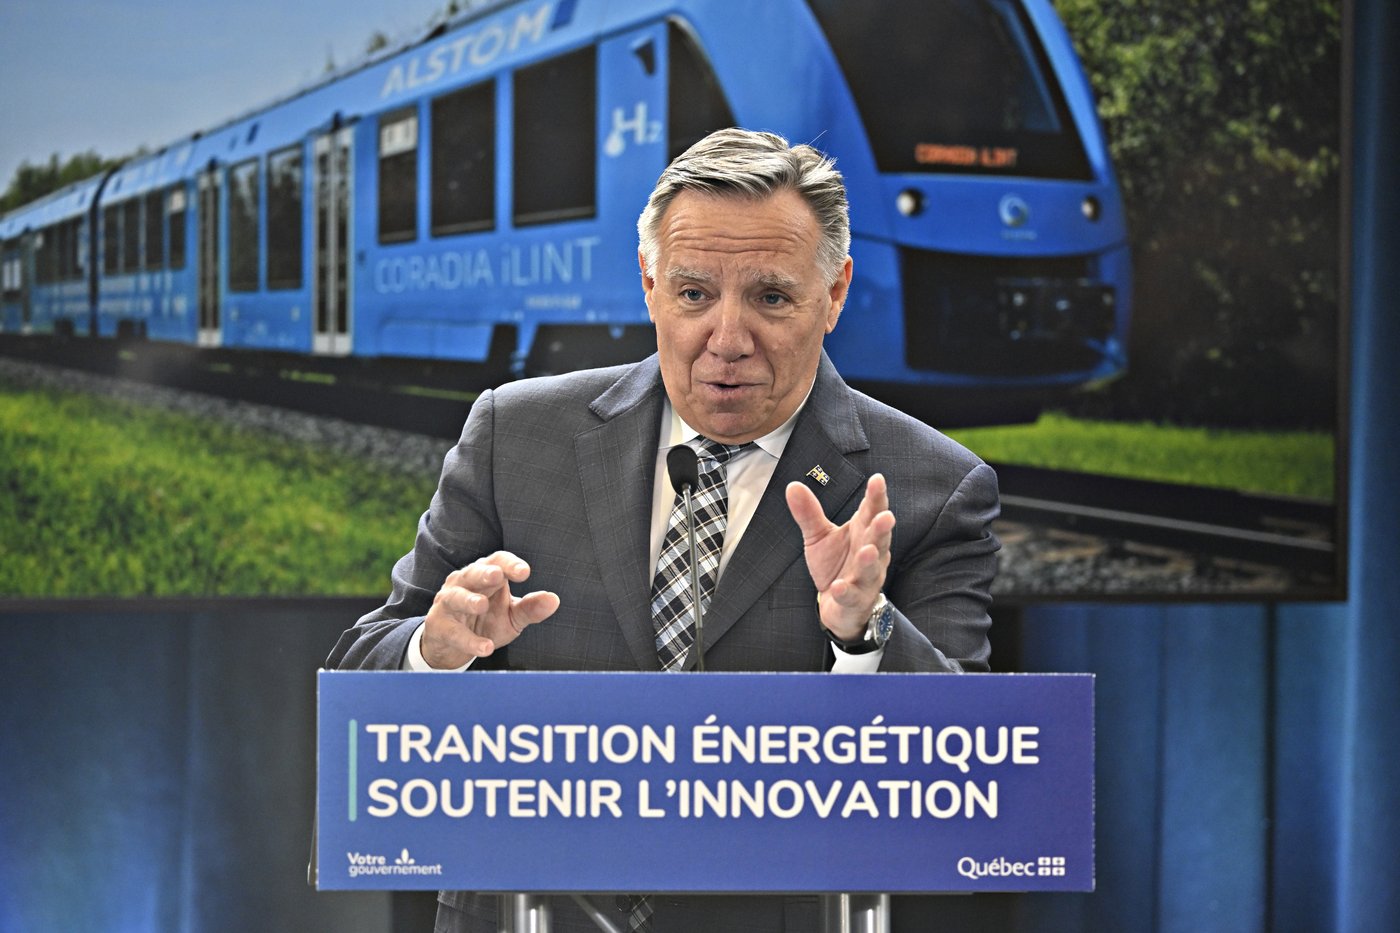 Le premier ministre du Québec François Legault annonce l'implantation d'un train à hydrogène vert dans la région de Charlevoix, le jeudi 2 février 2023 à Québec.